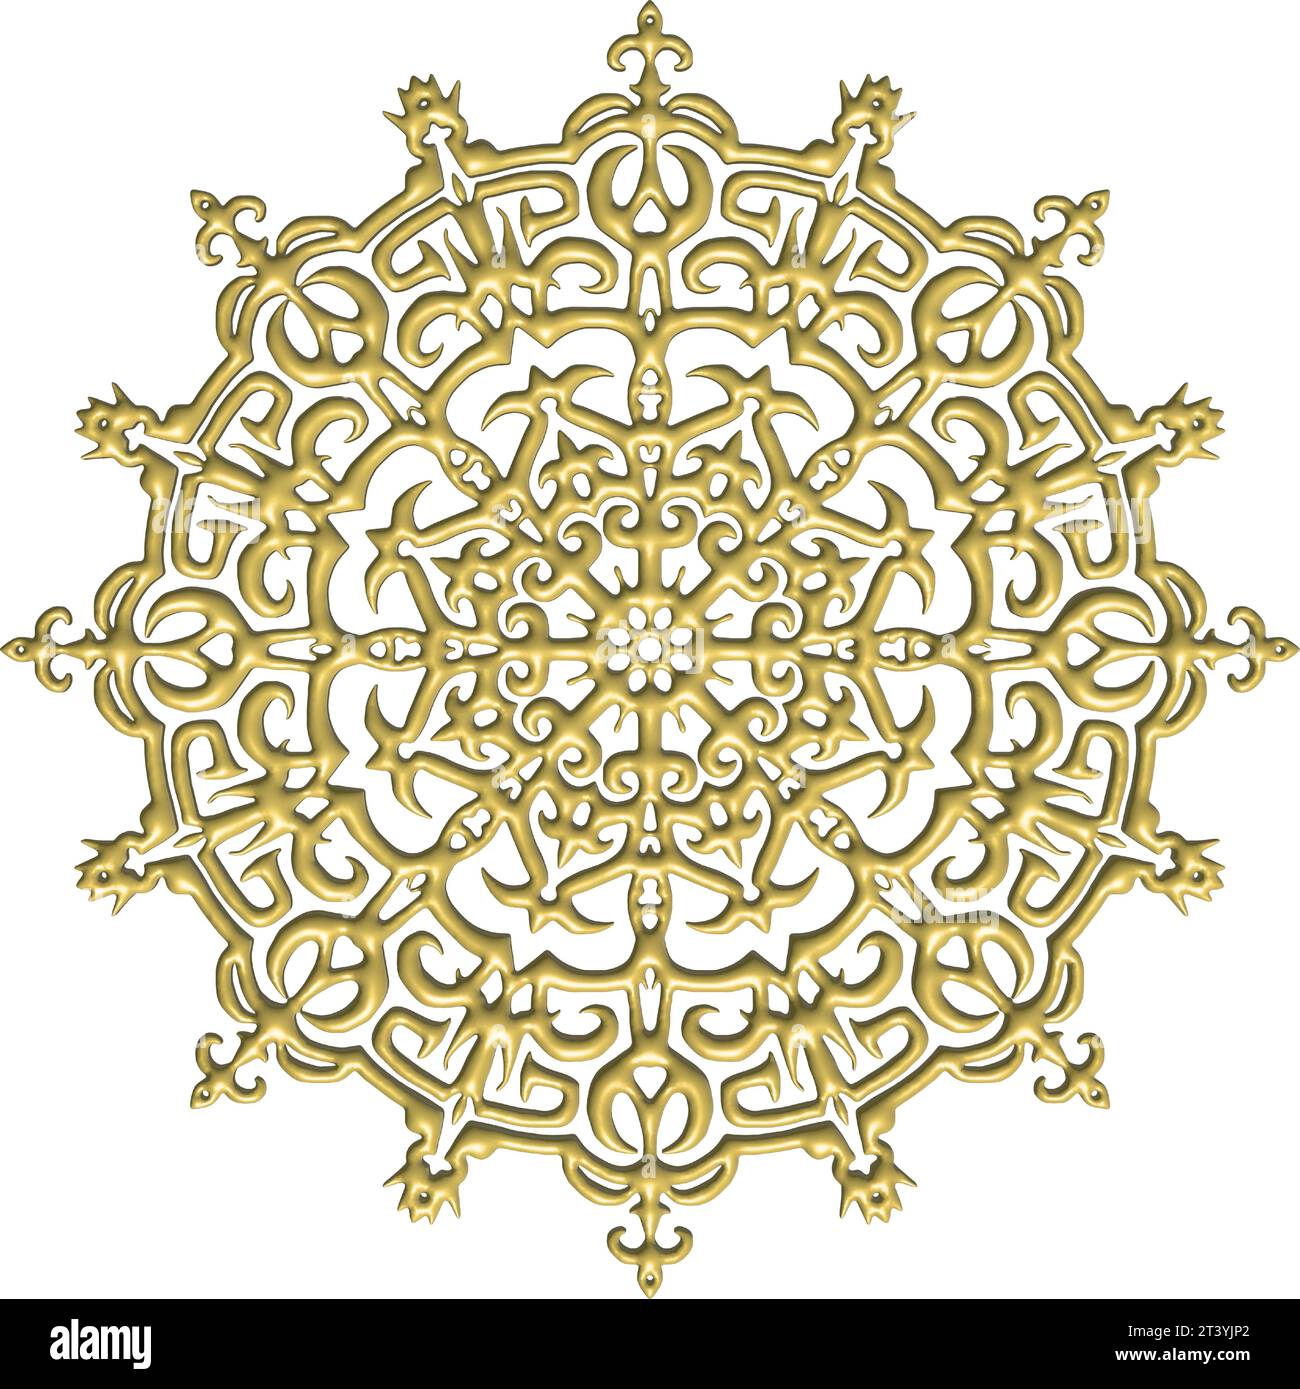 Intricata architettura gotica in 3D, decorata con disegni dettagliati, illuminata con oro radioso e intricati motivi vegetativi Illustrazione Vettoriale